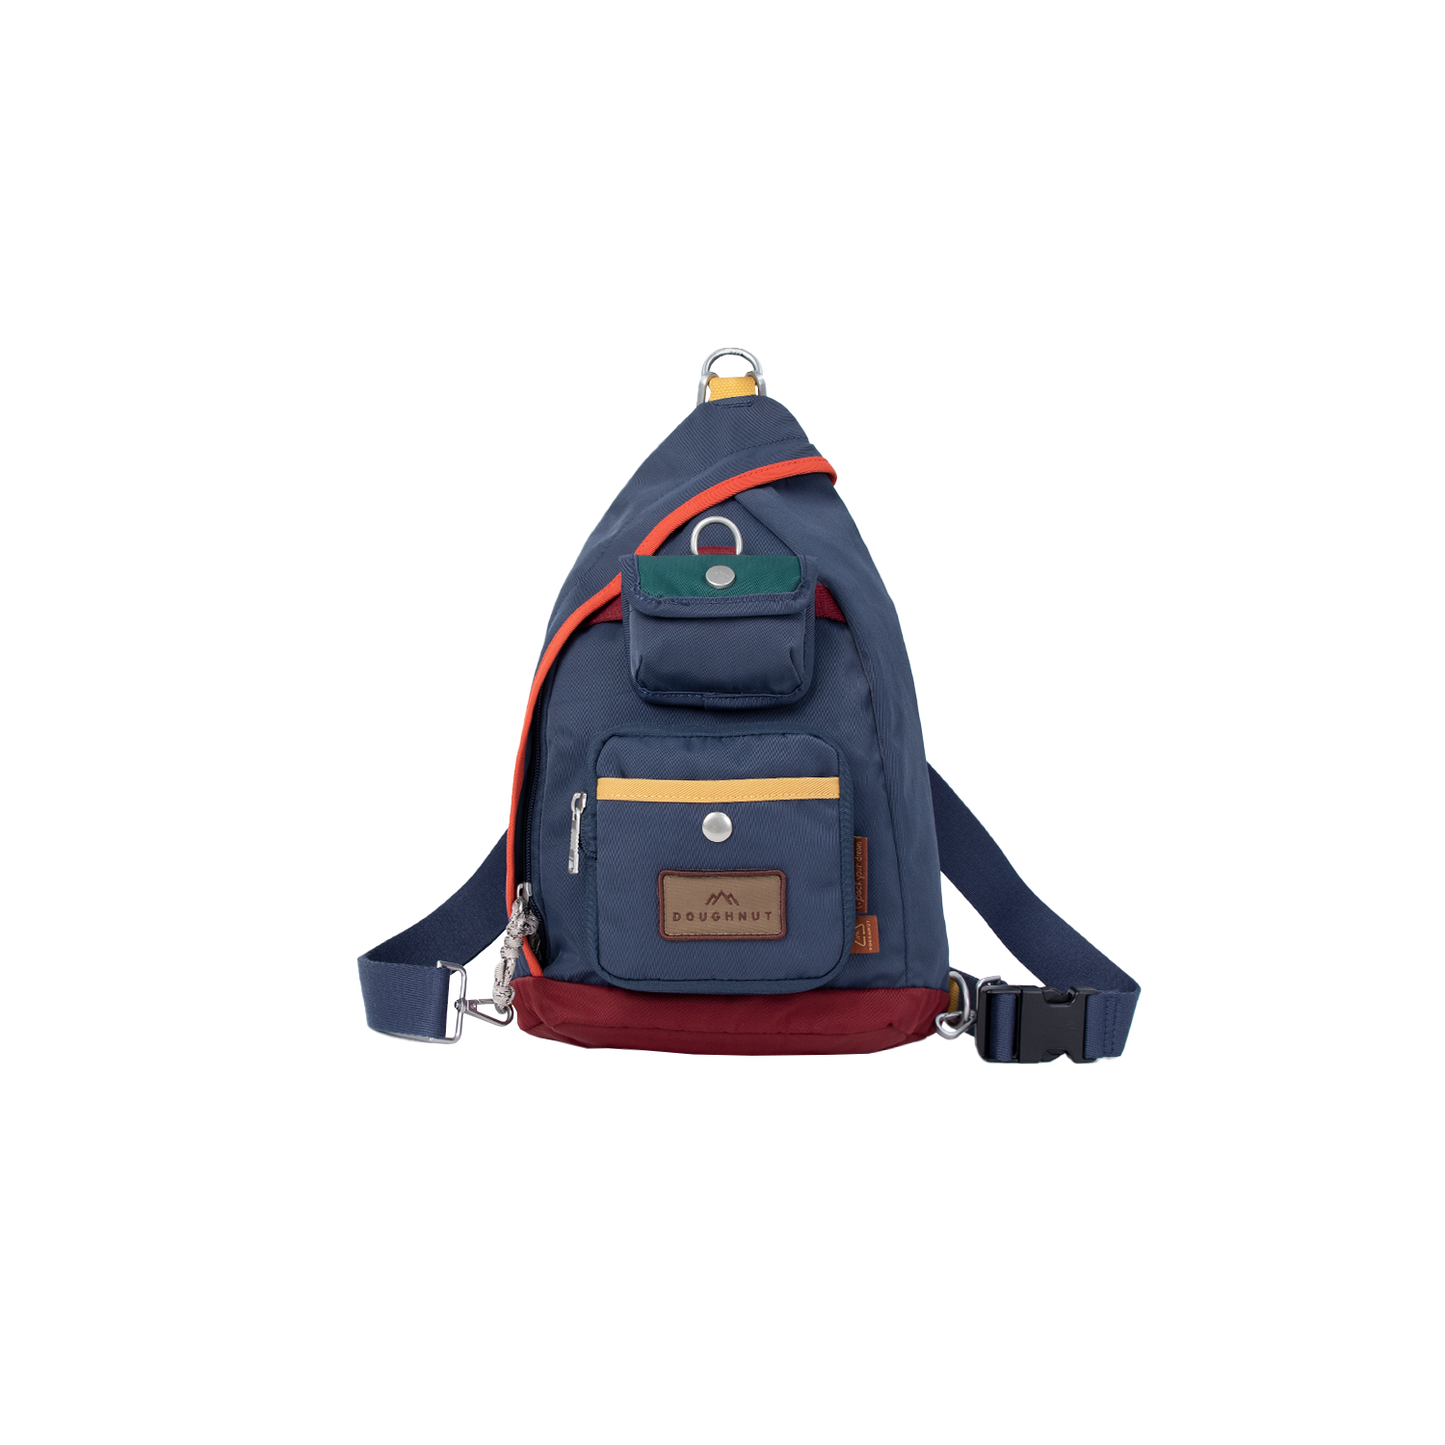 Hammock Happy Camper Series Backpack